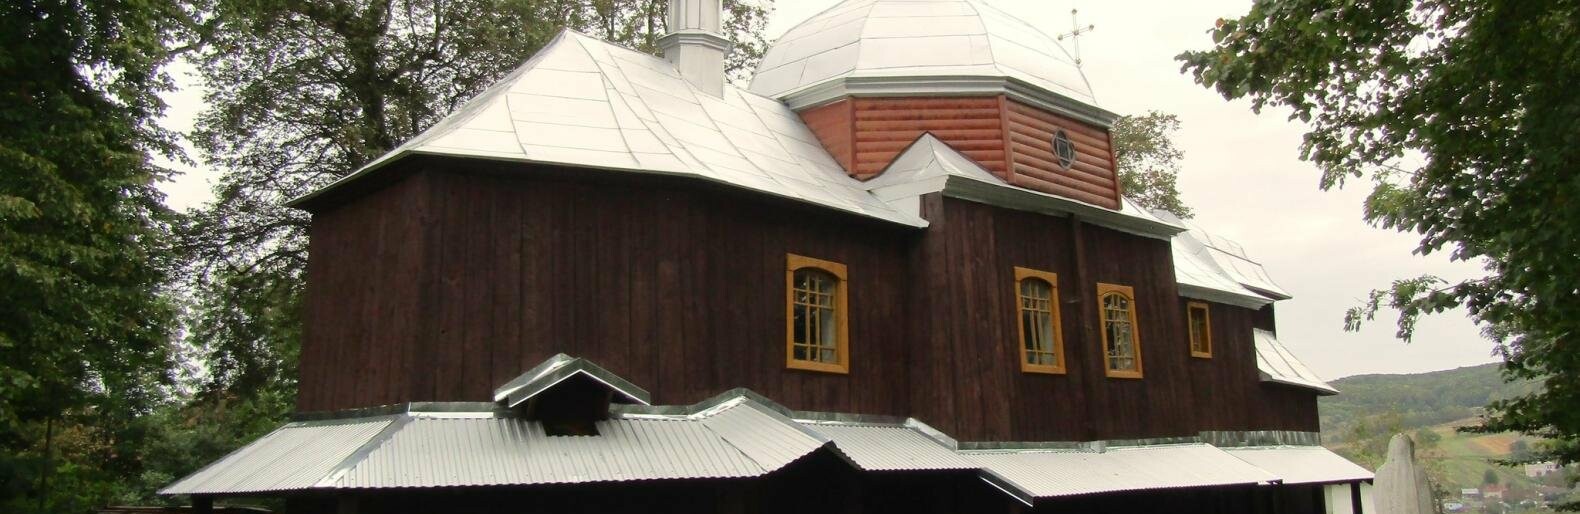 Більше 20 років була недіючою: давню дерев'яну церкву відновили на Тернопільщині